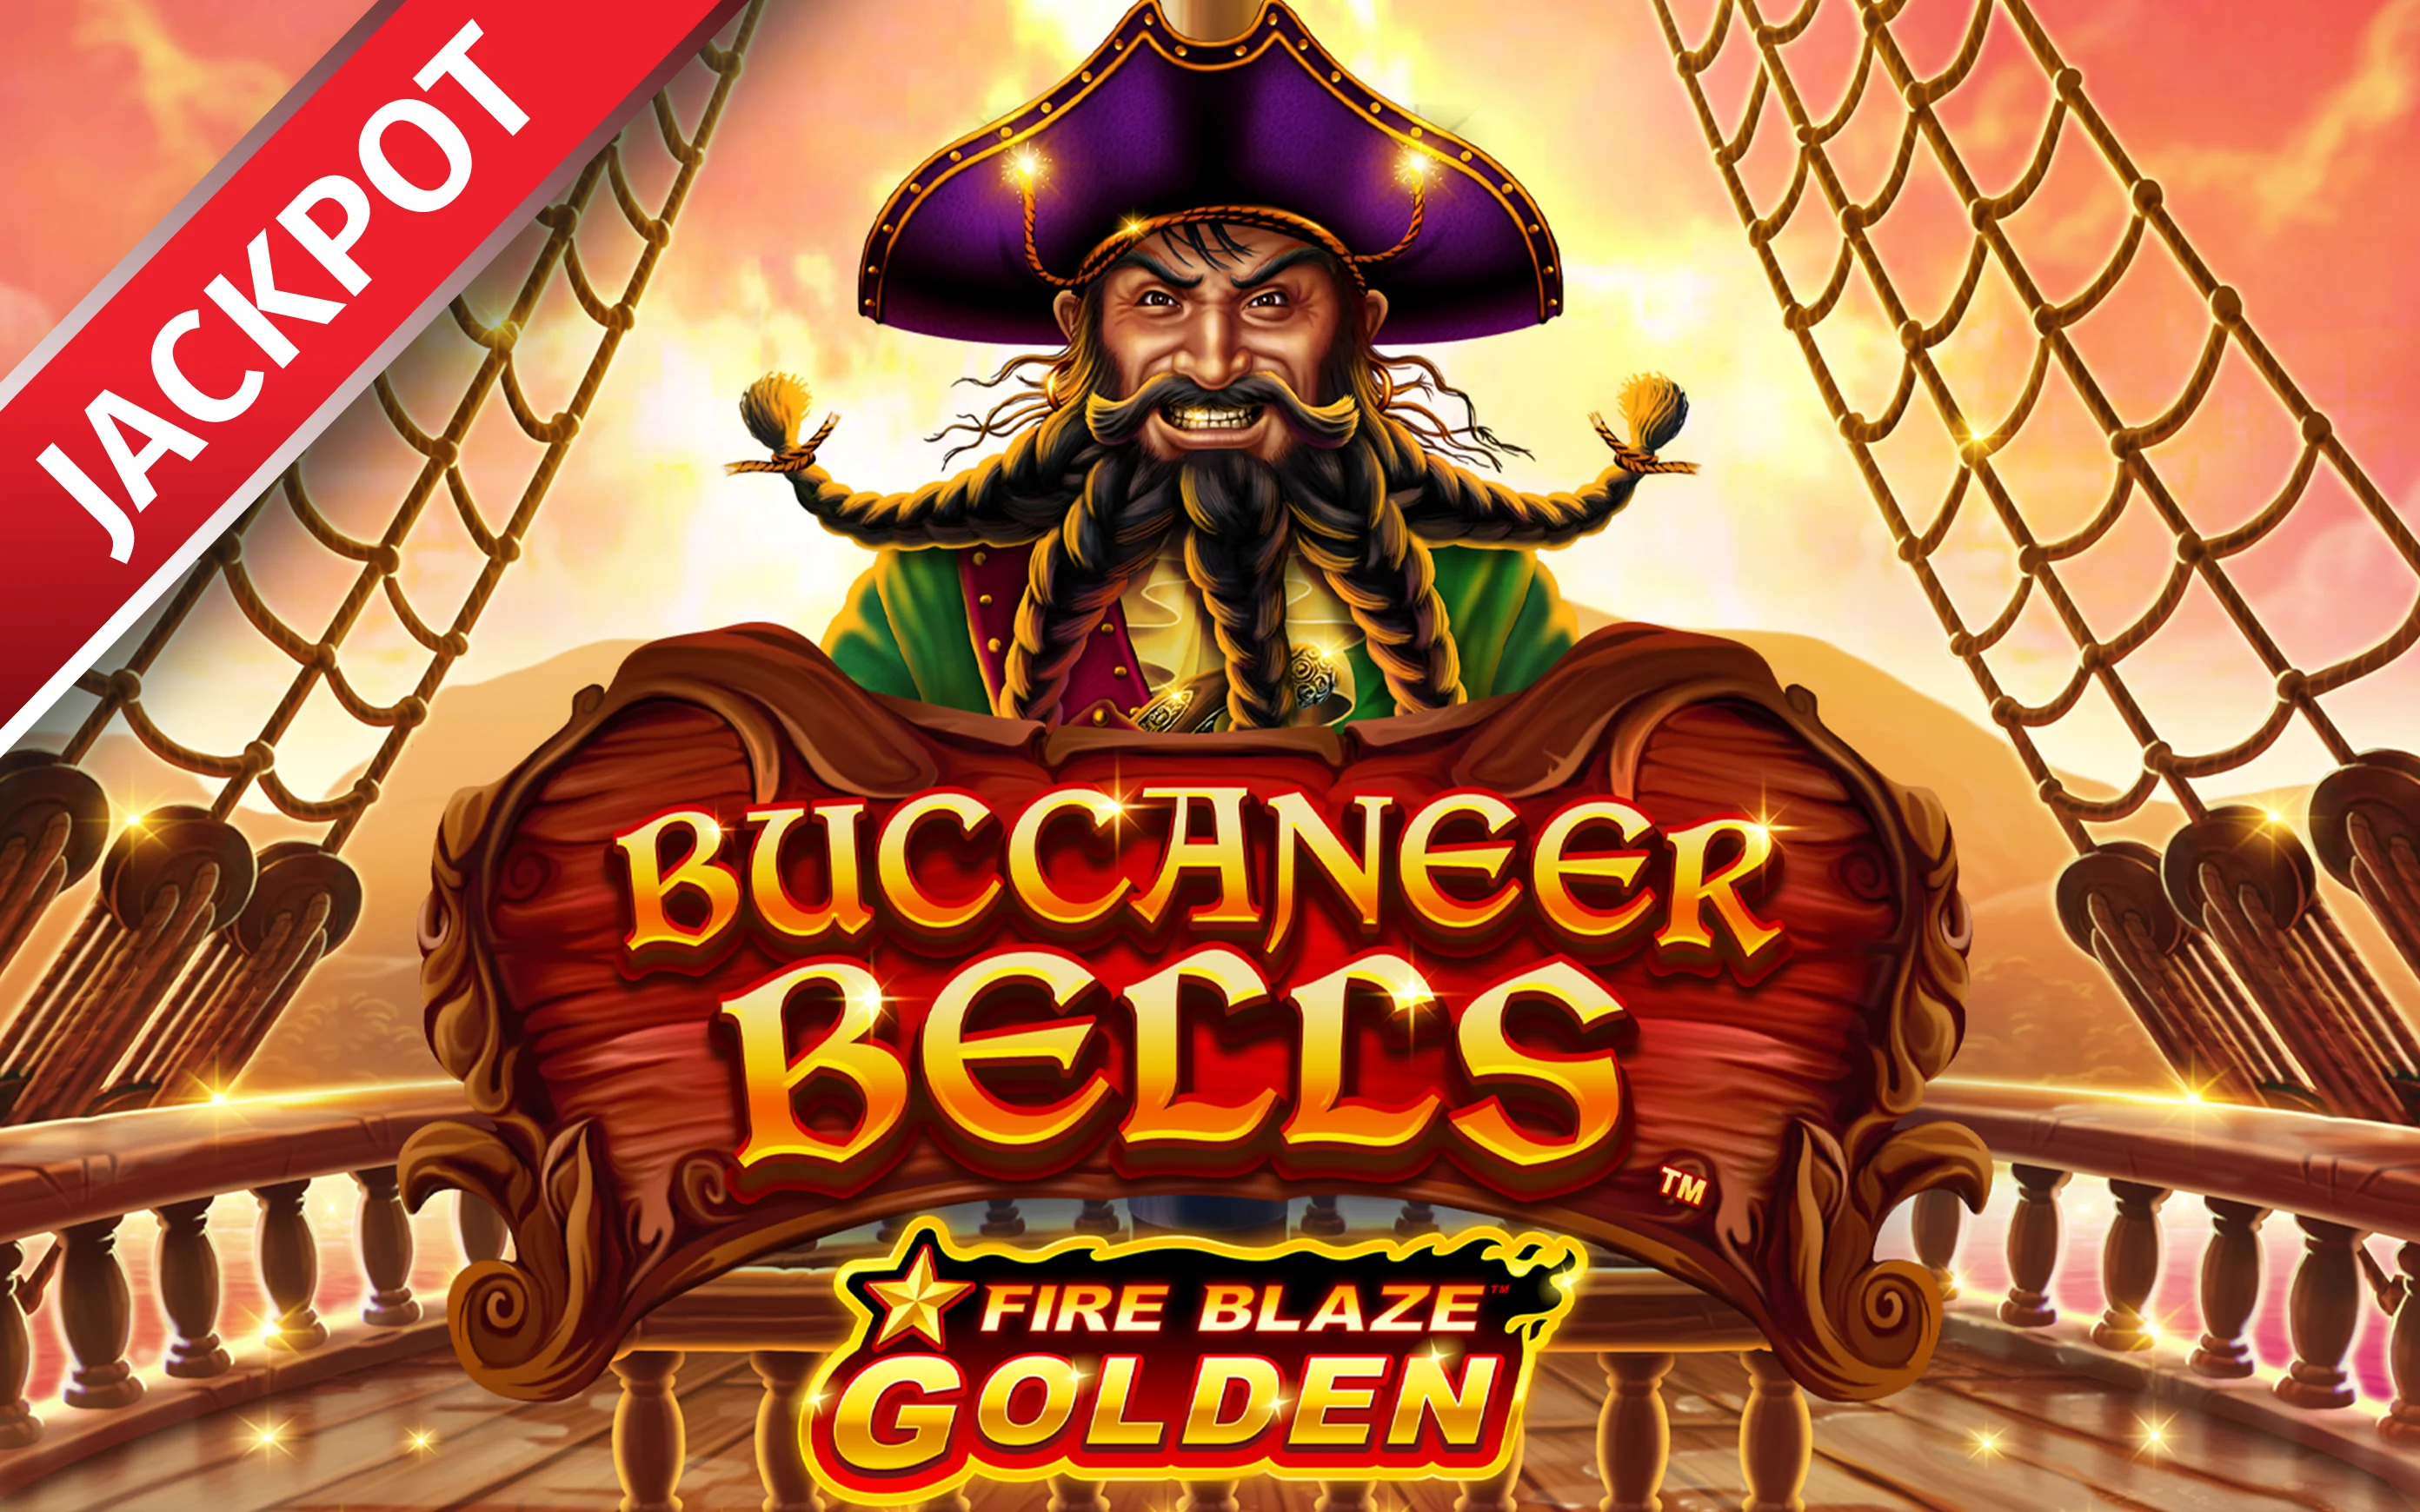 Играйте в Fire Blaze Golden Buccaneer Bells в онлайн-казино Starcasino.be